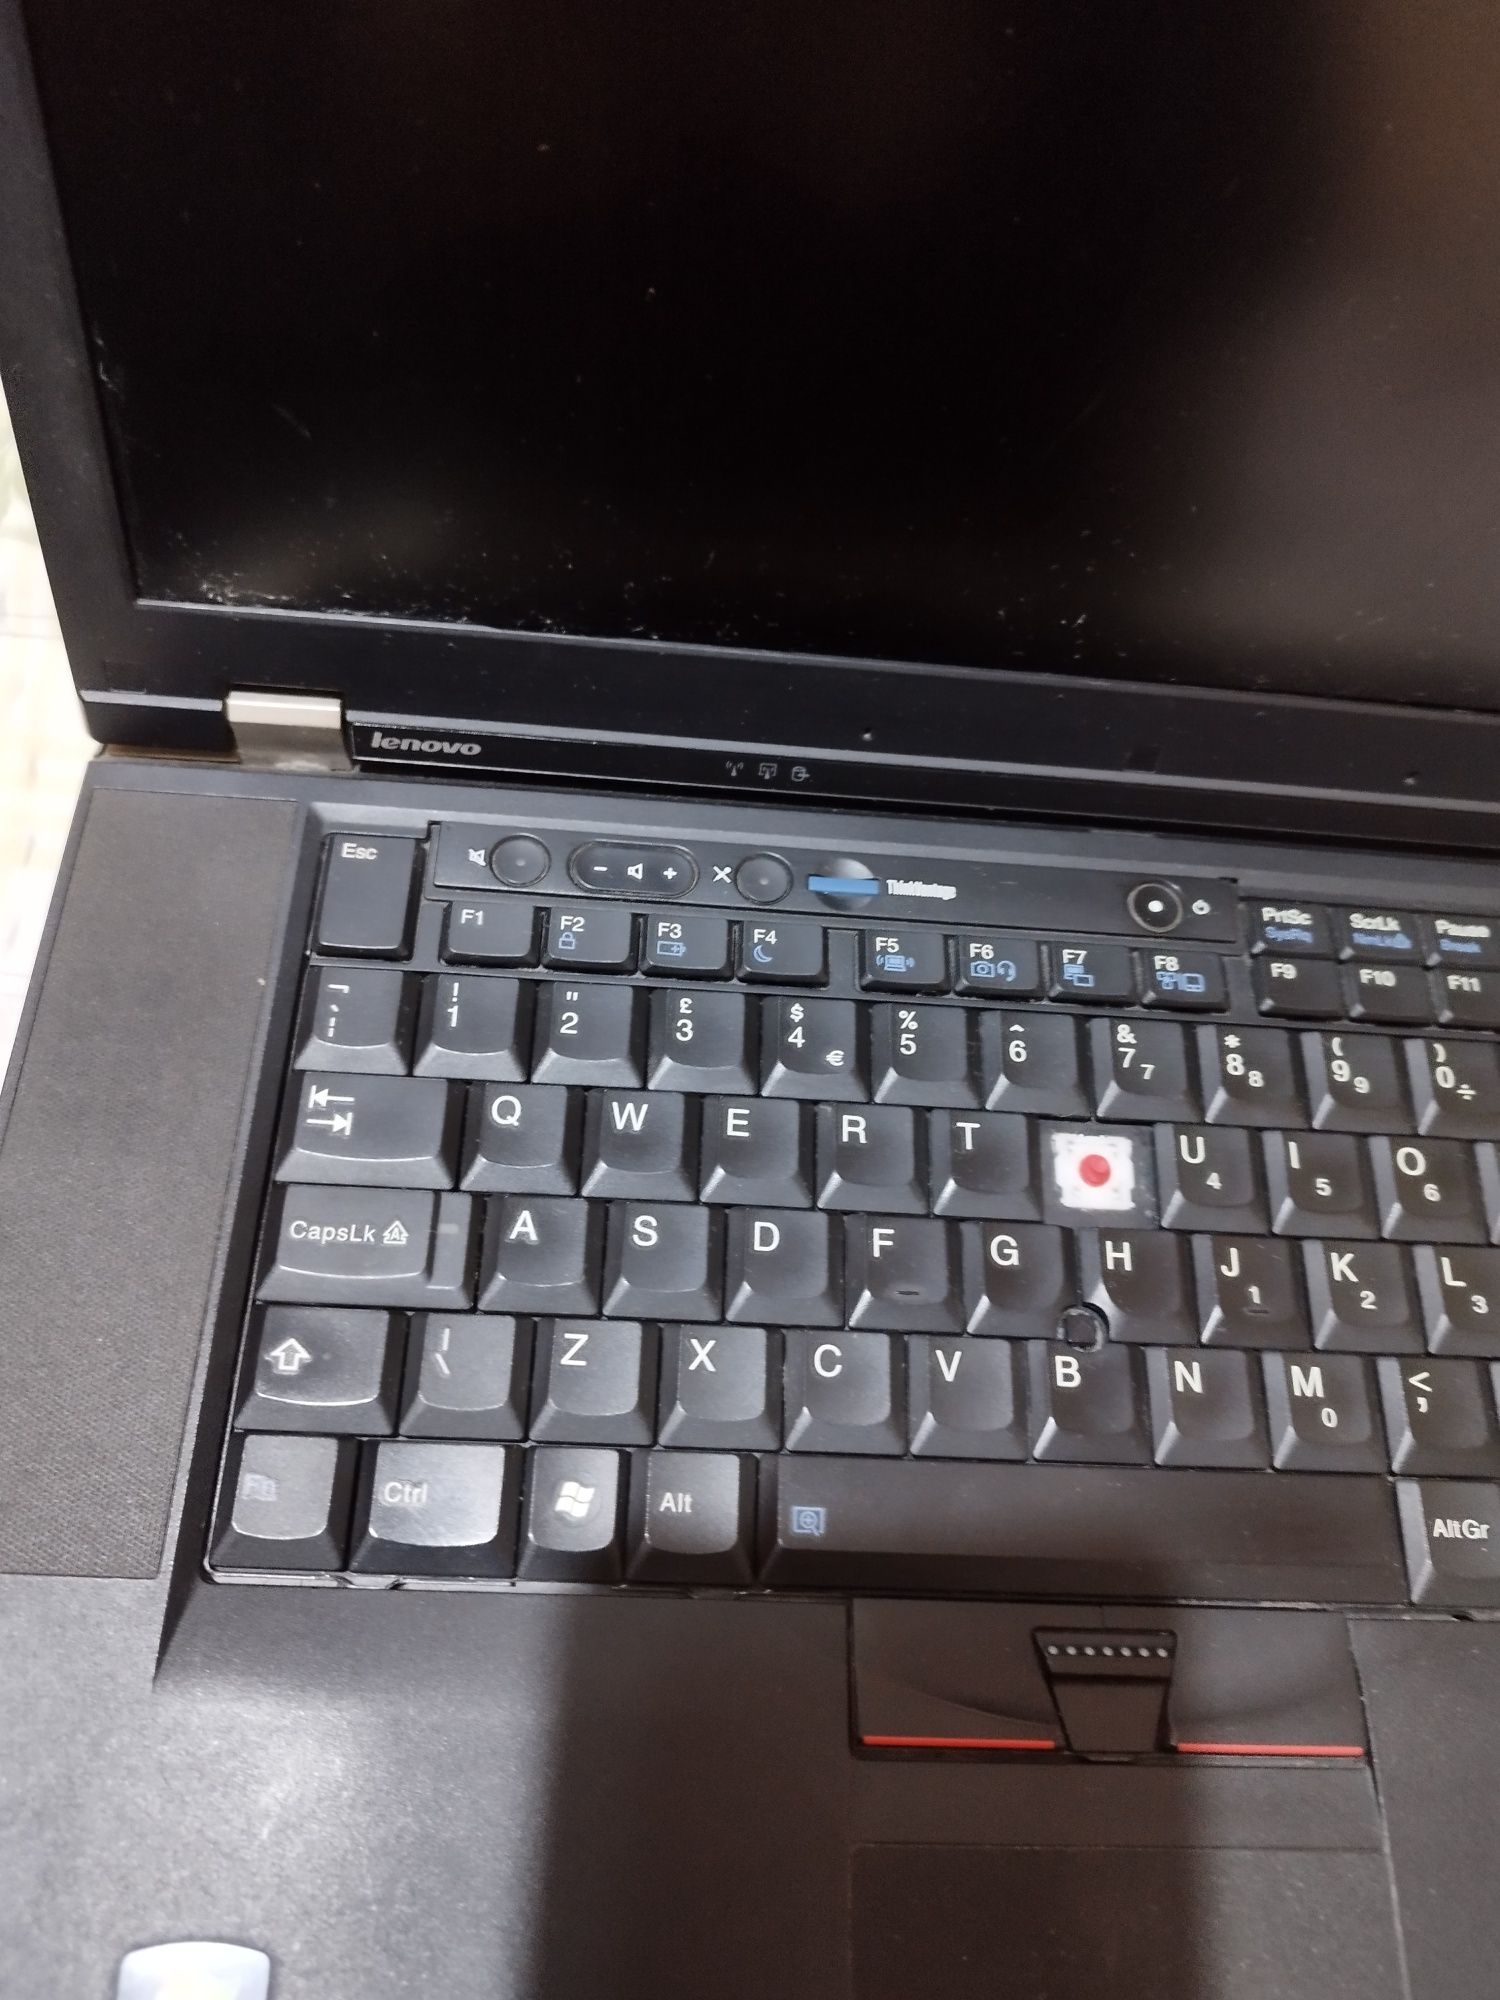 Лаптоп W510 за части